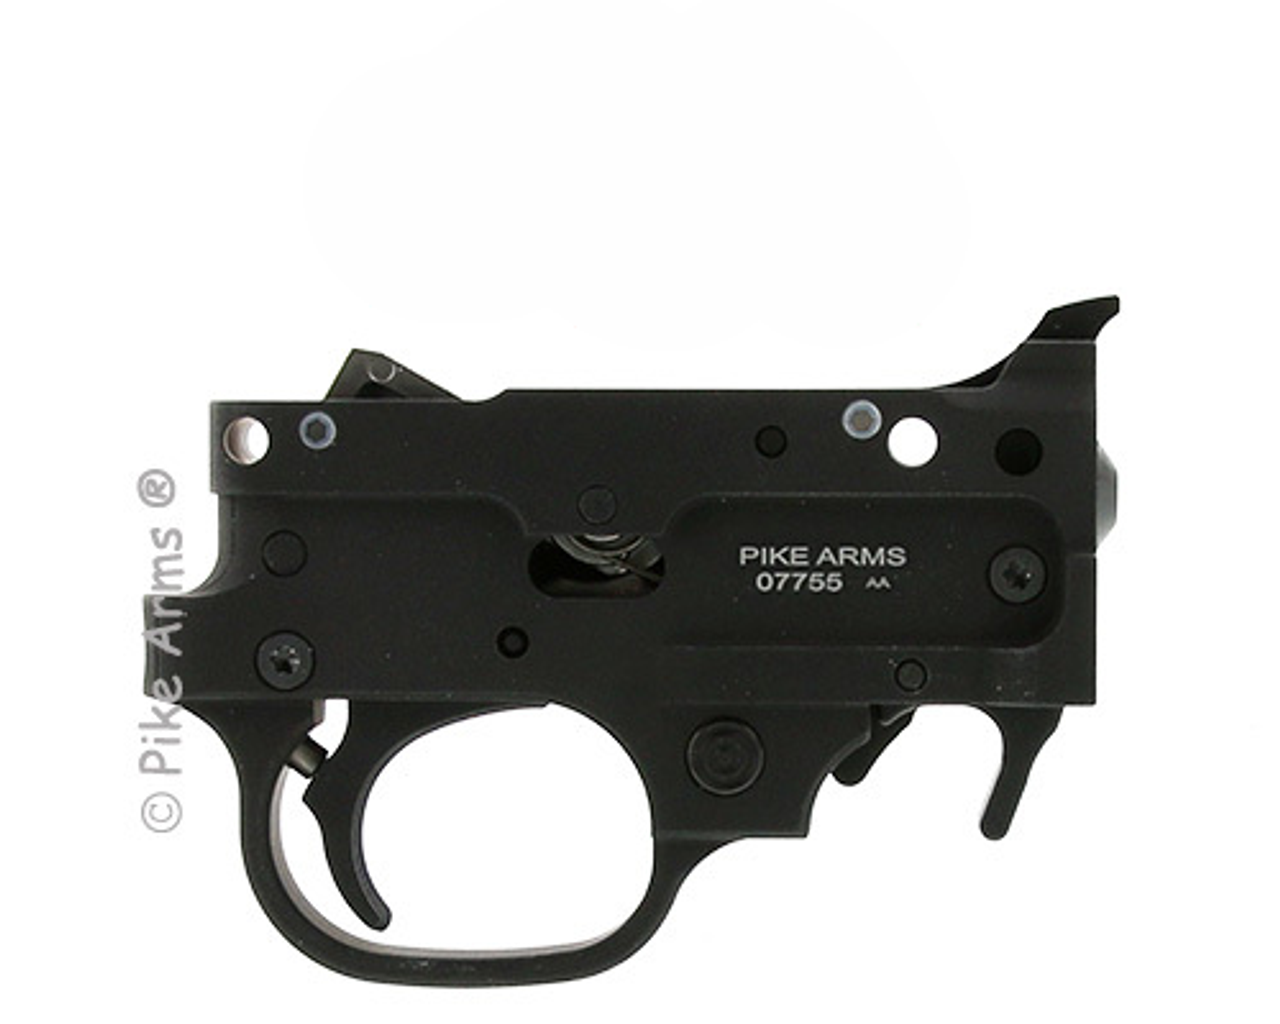 Pike Arms Matte Black Adjustable Receiver Fit Match Grade Complete Trigger Assembly Ruger 10/22